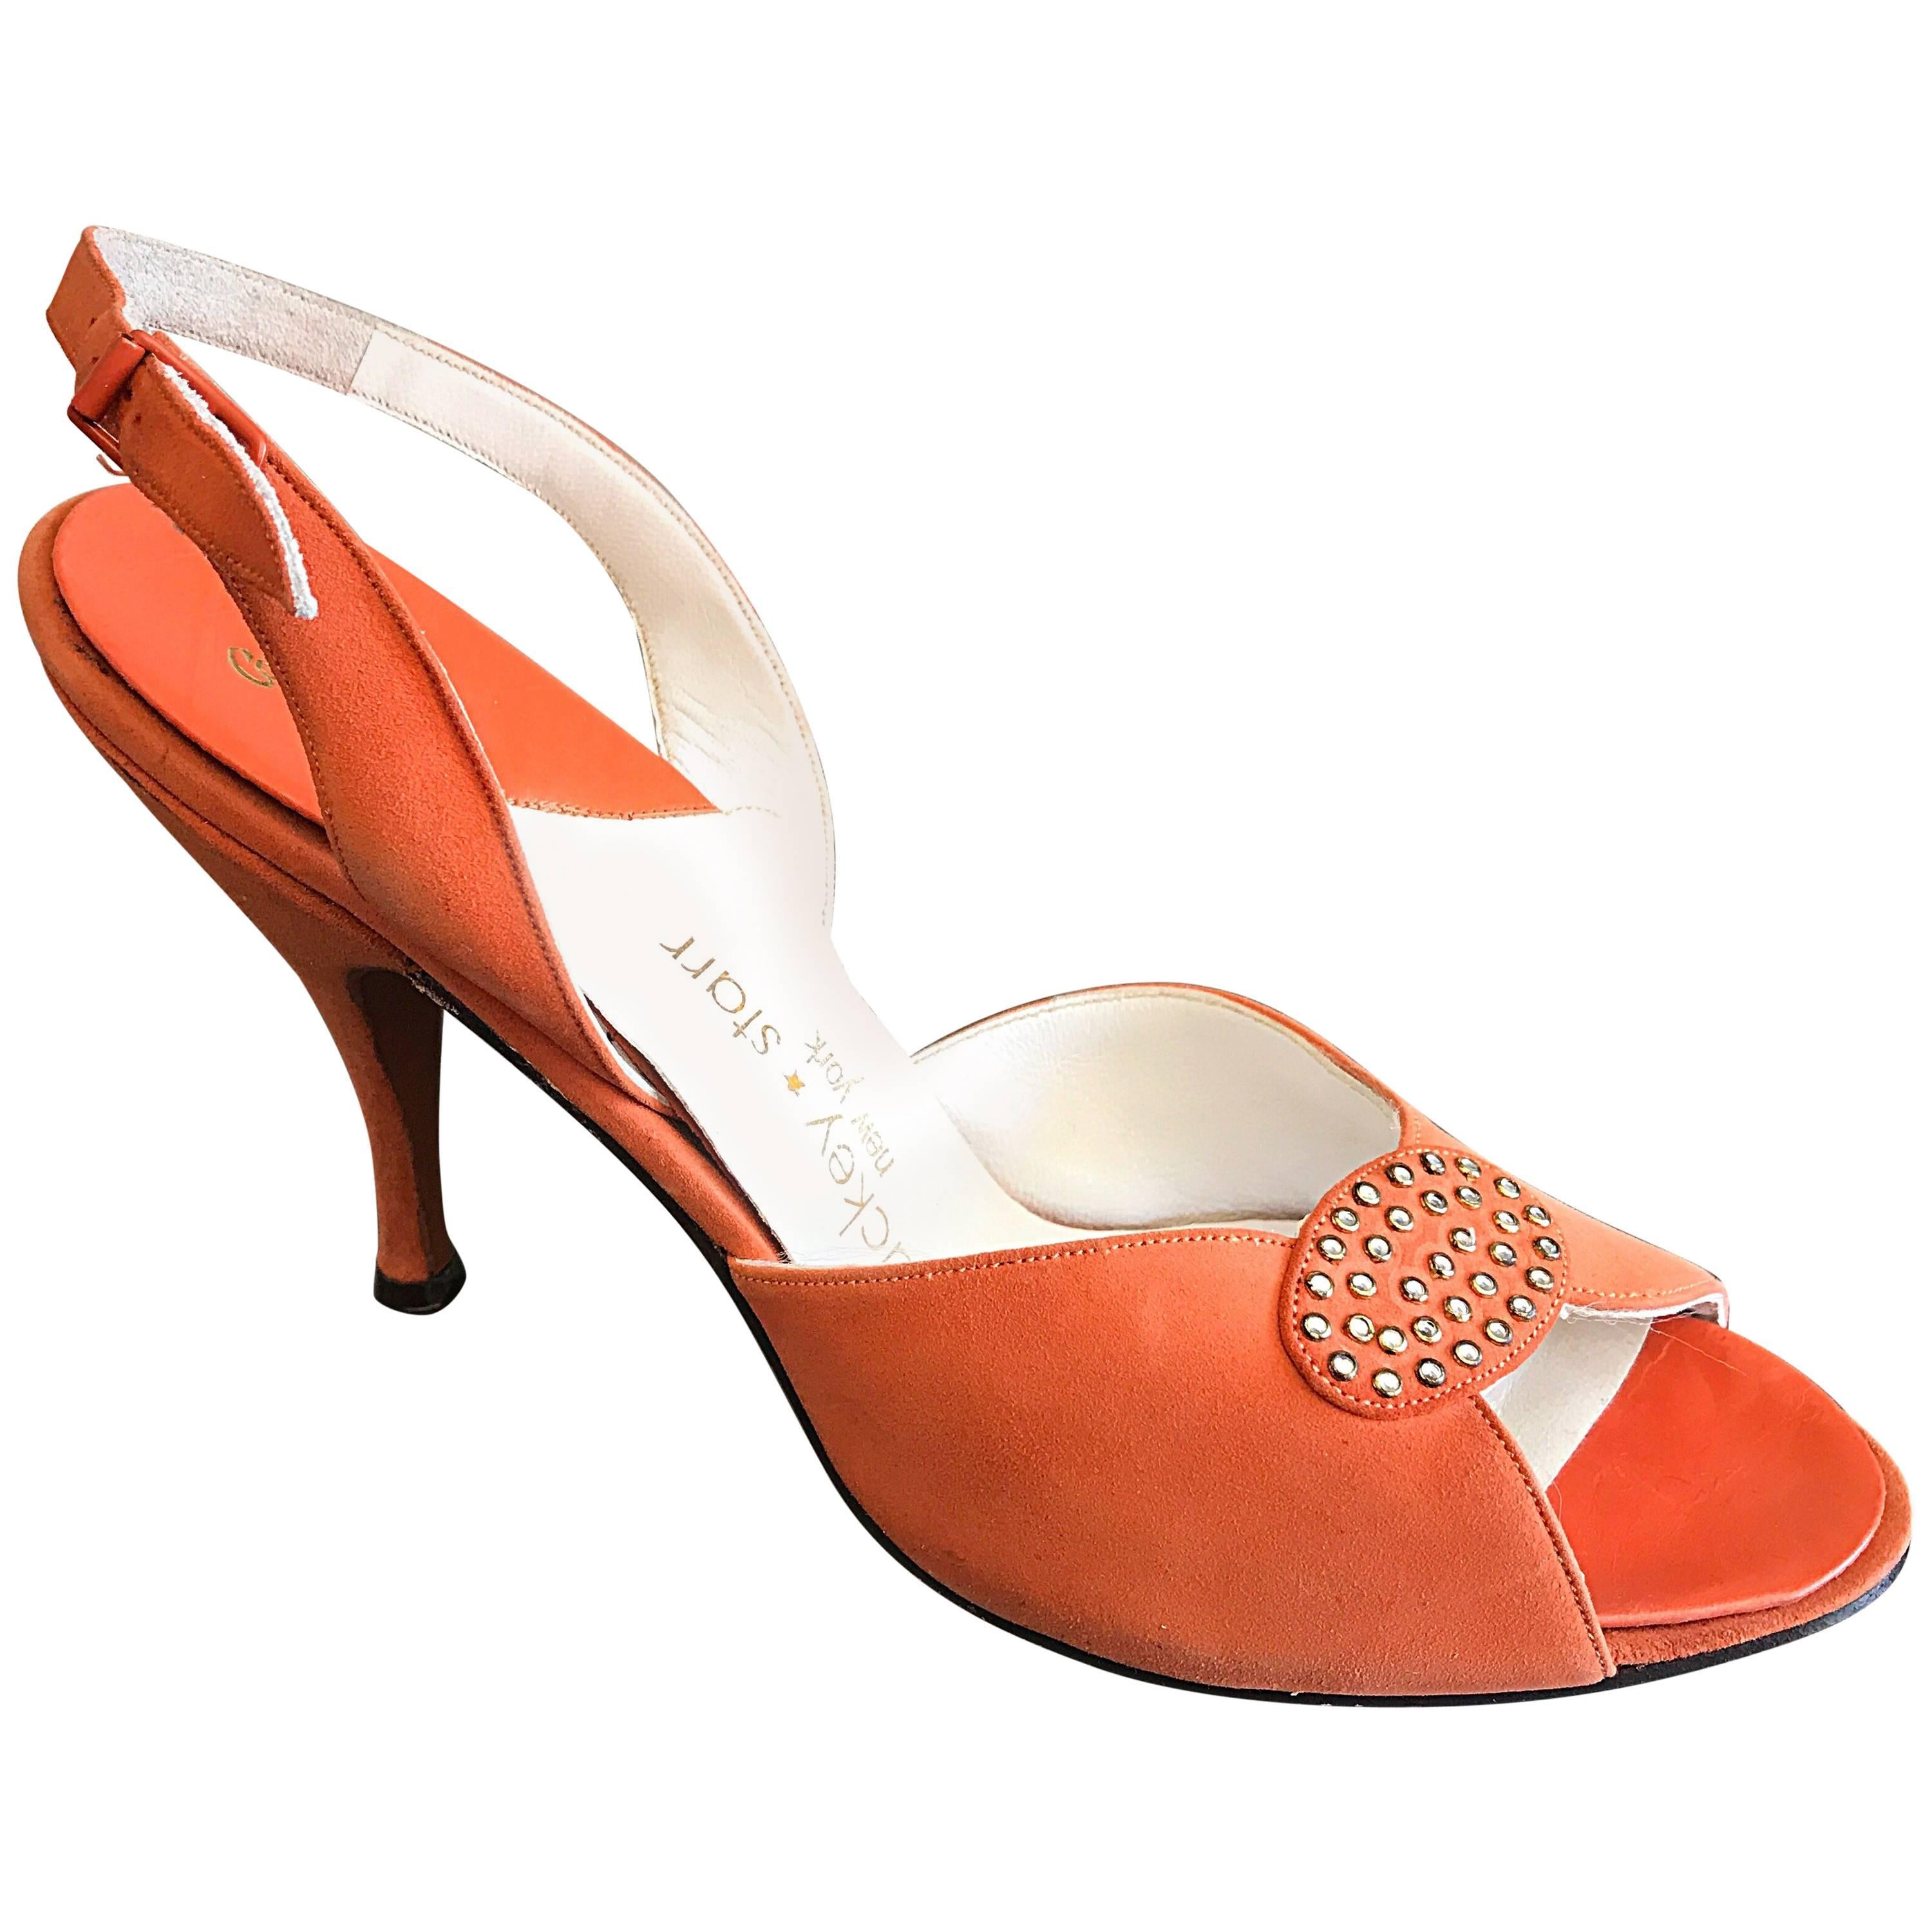 New 1950s Mackey Starr Size 6N Sorbet Orange Leather Rhinestone Slingback Heels 